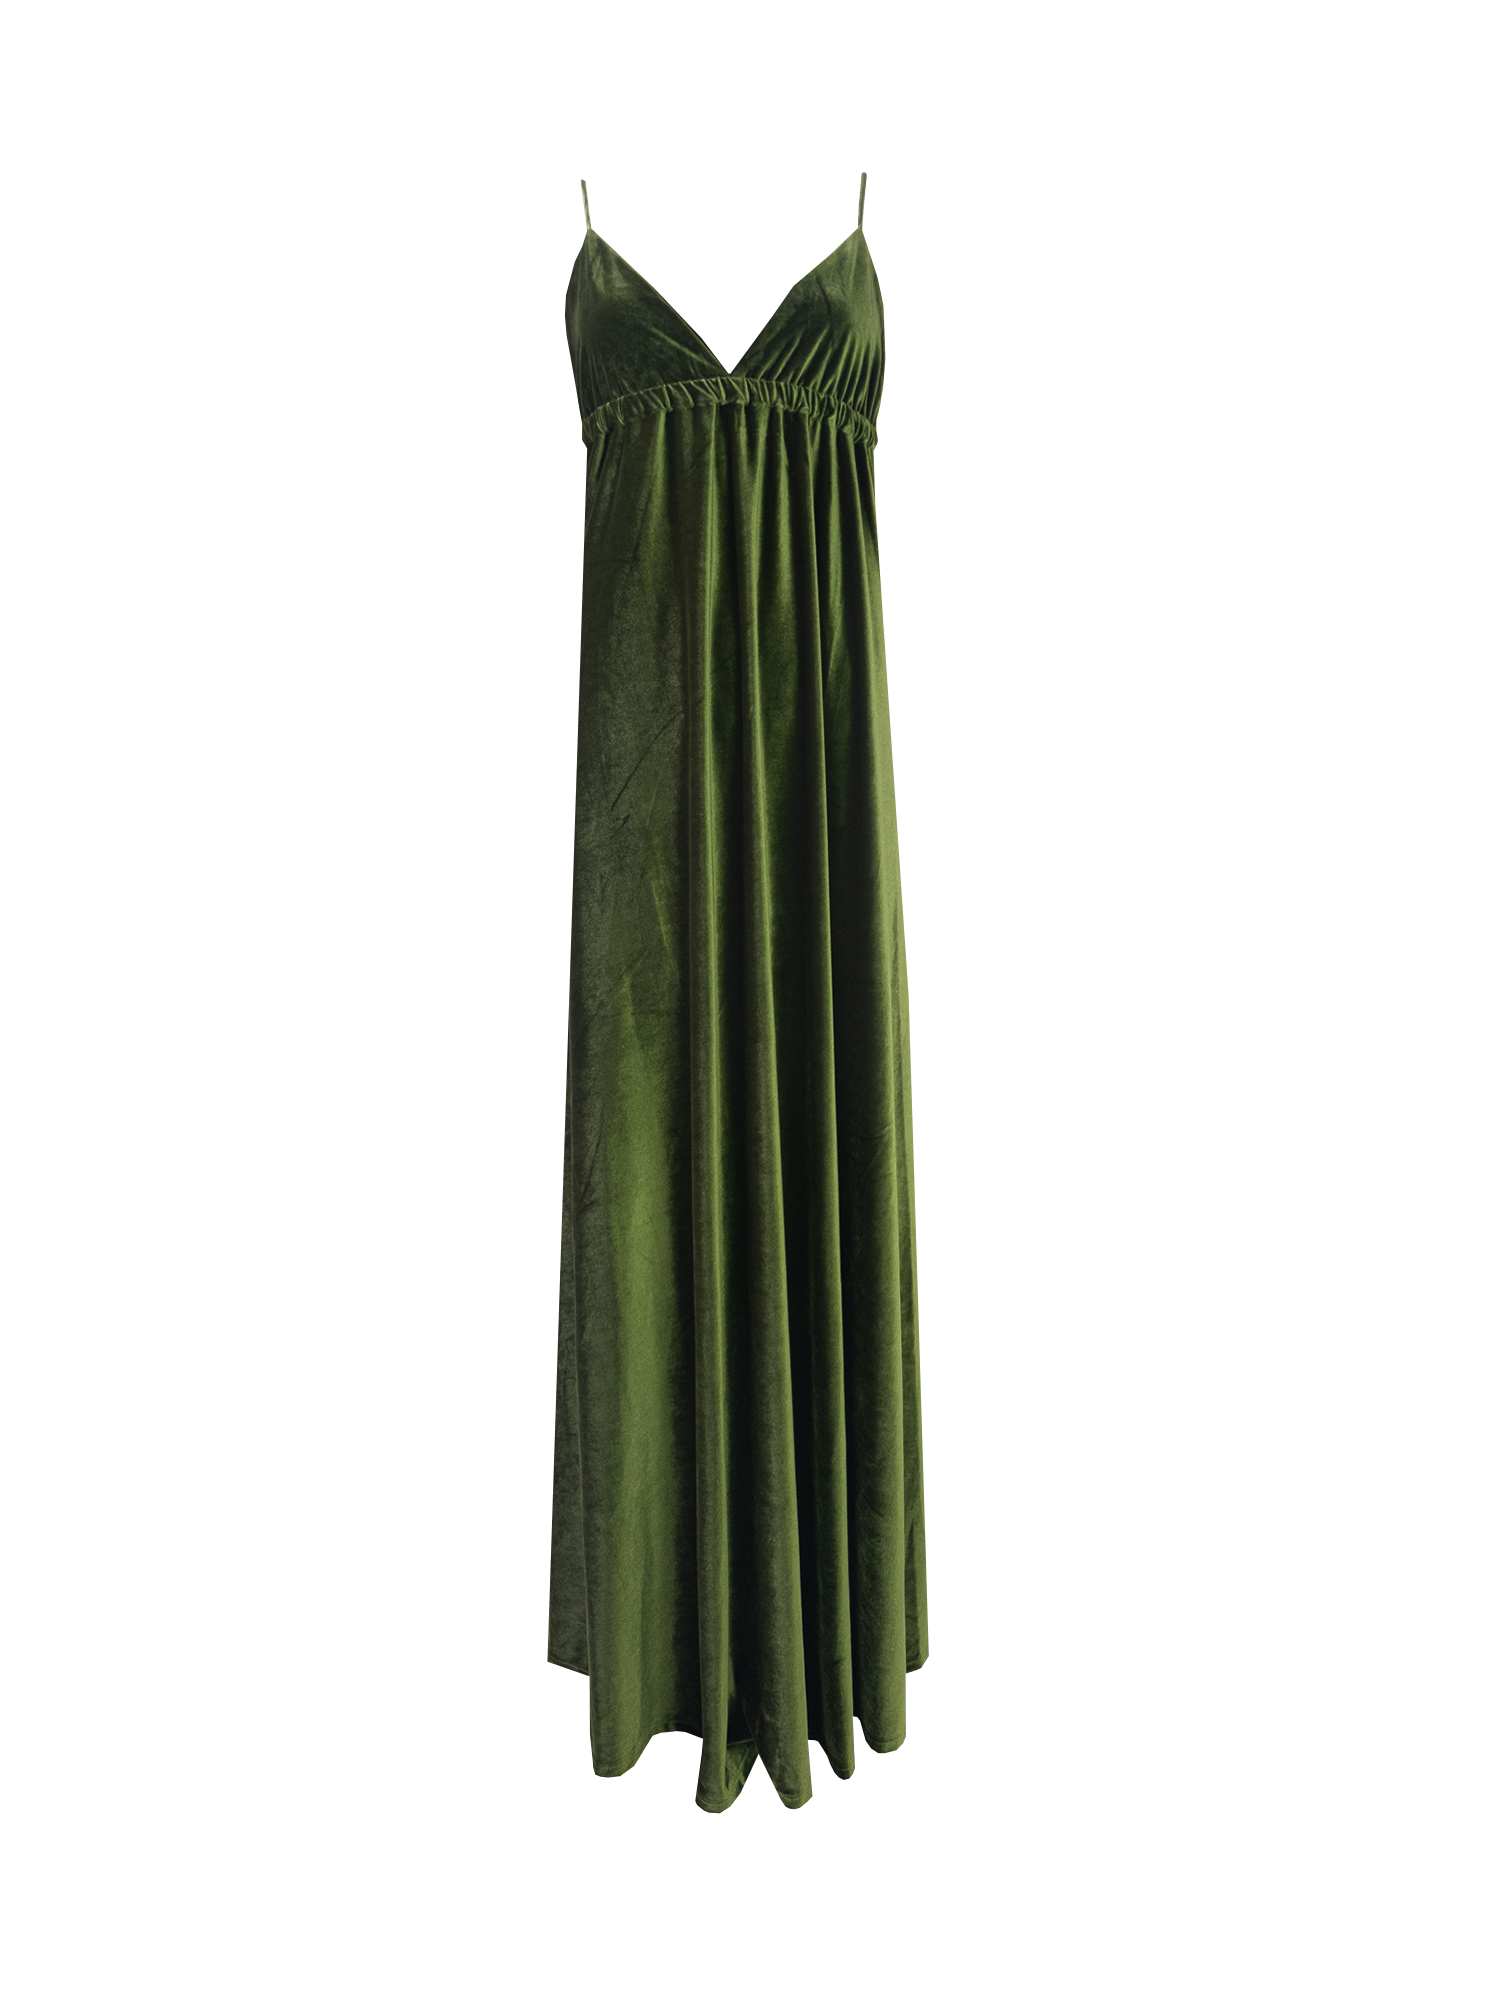 MICOL - long cross back dress in green chenille